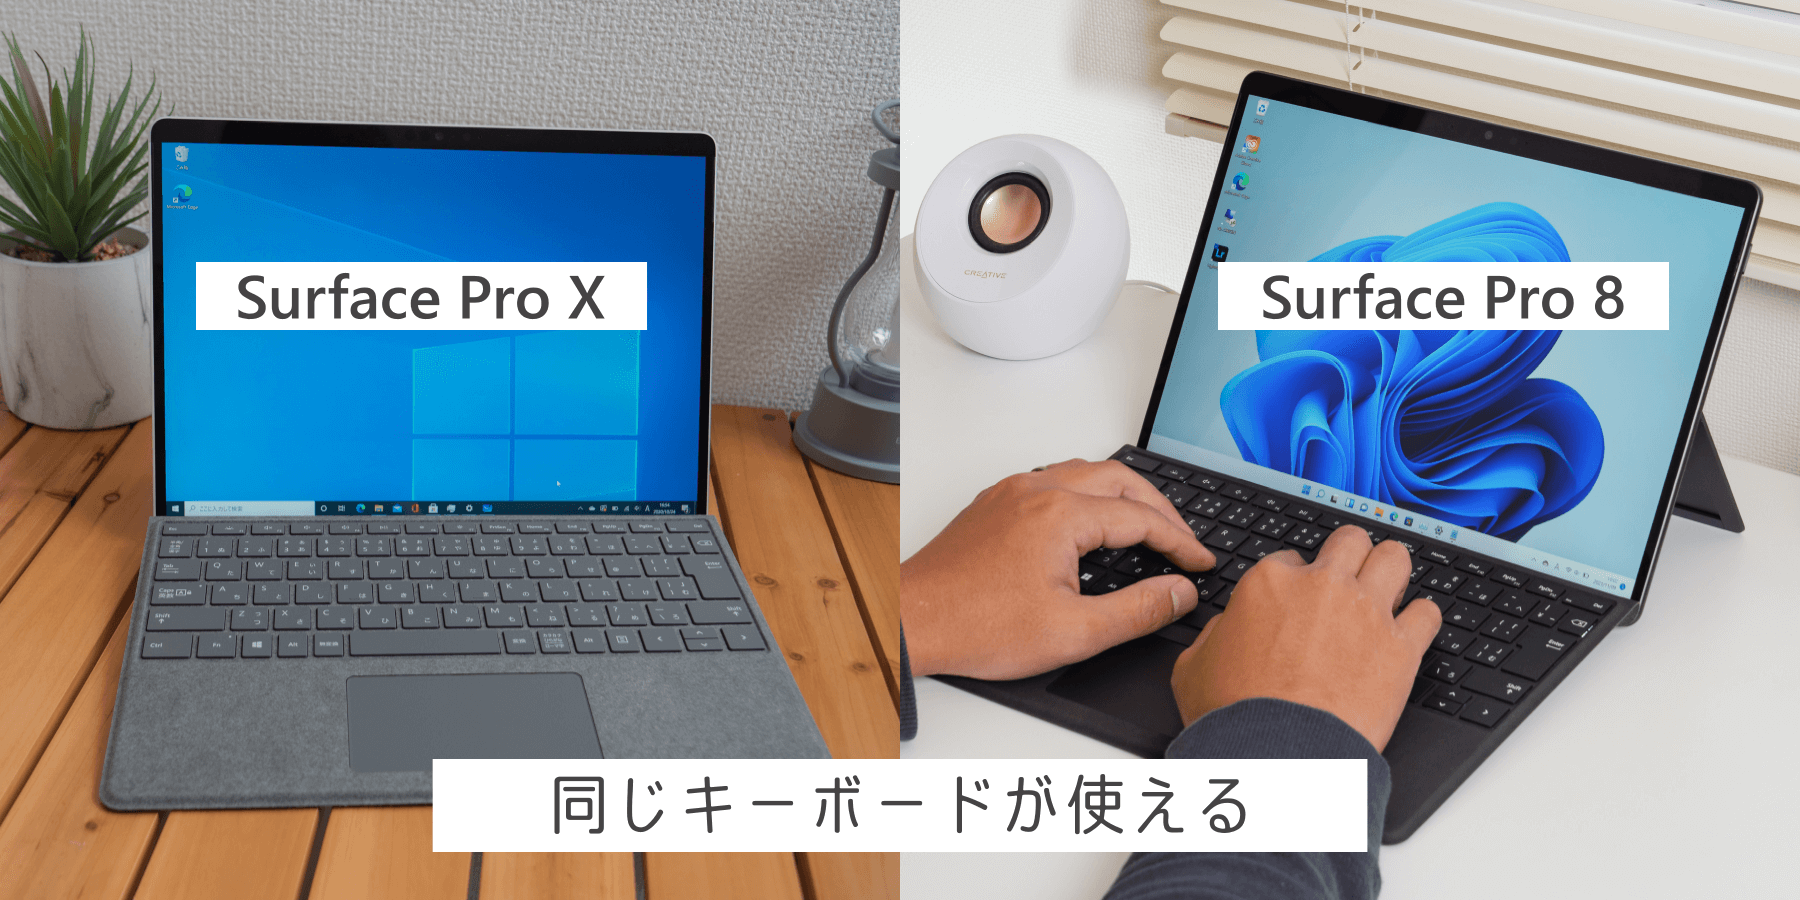 Surface Pro 8 と Pro X は同じキーボードが使える